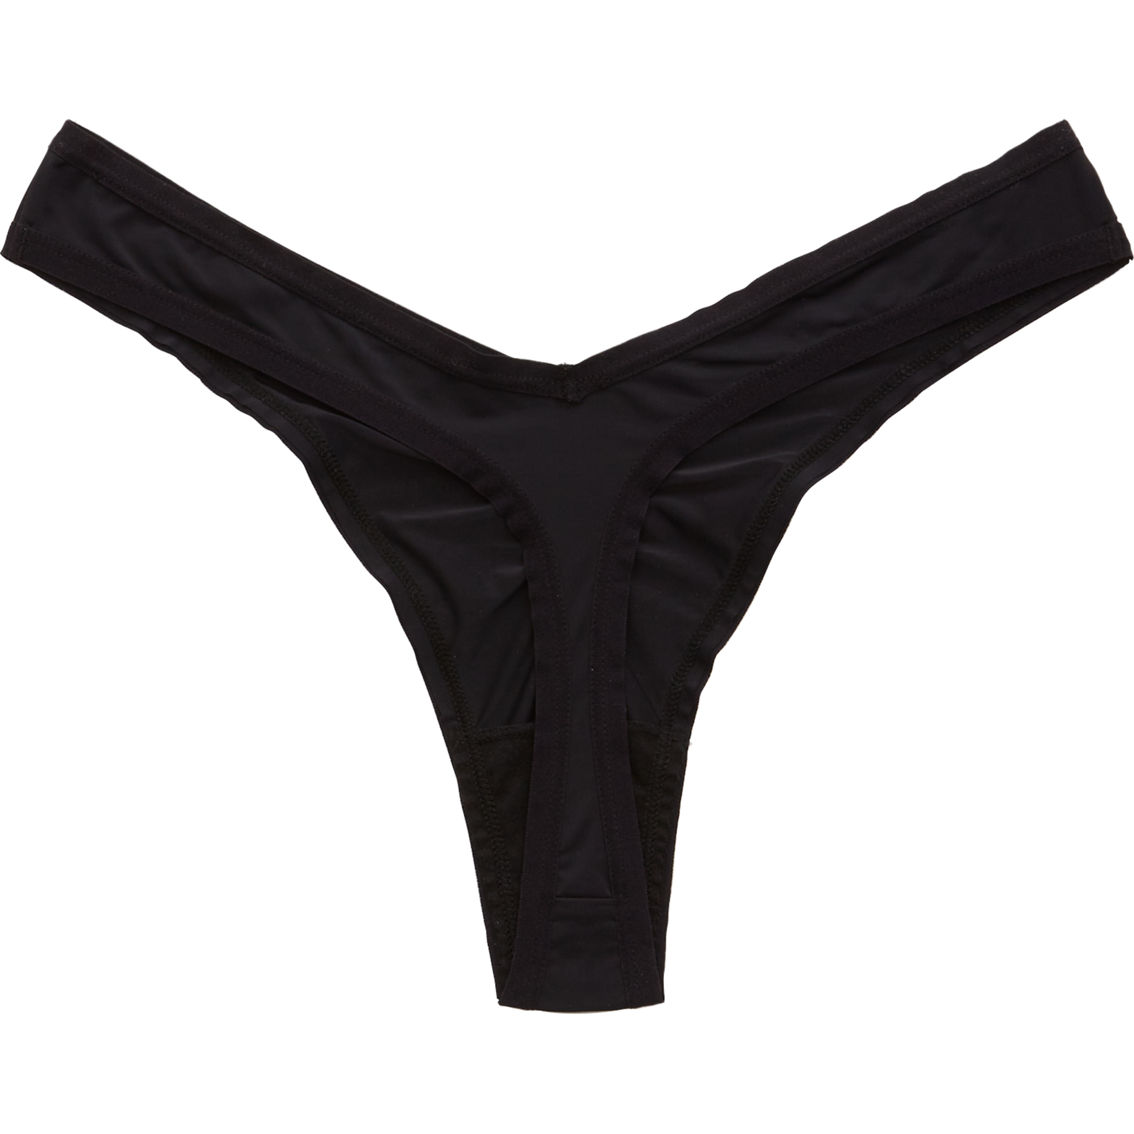 Aerie Microfiber Thong Underwear | Panties | Clothing & Accessories ...